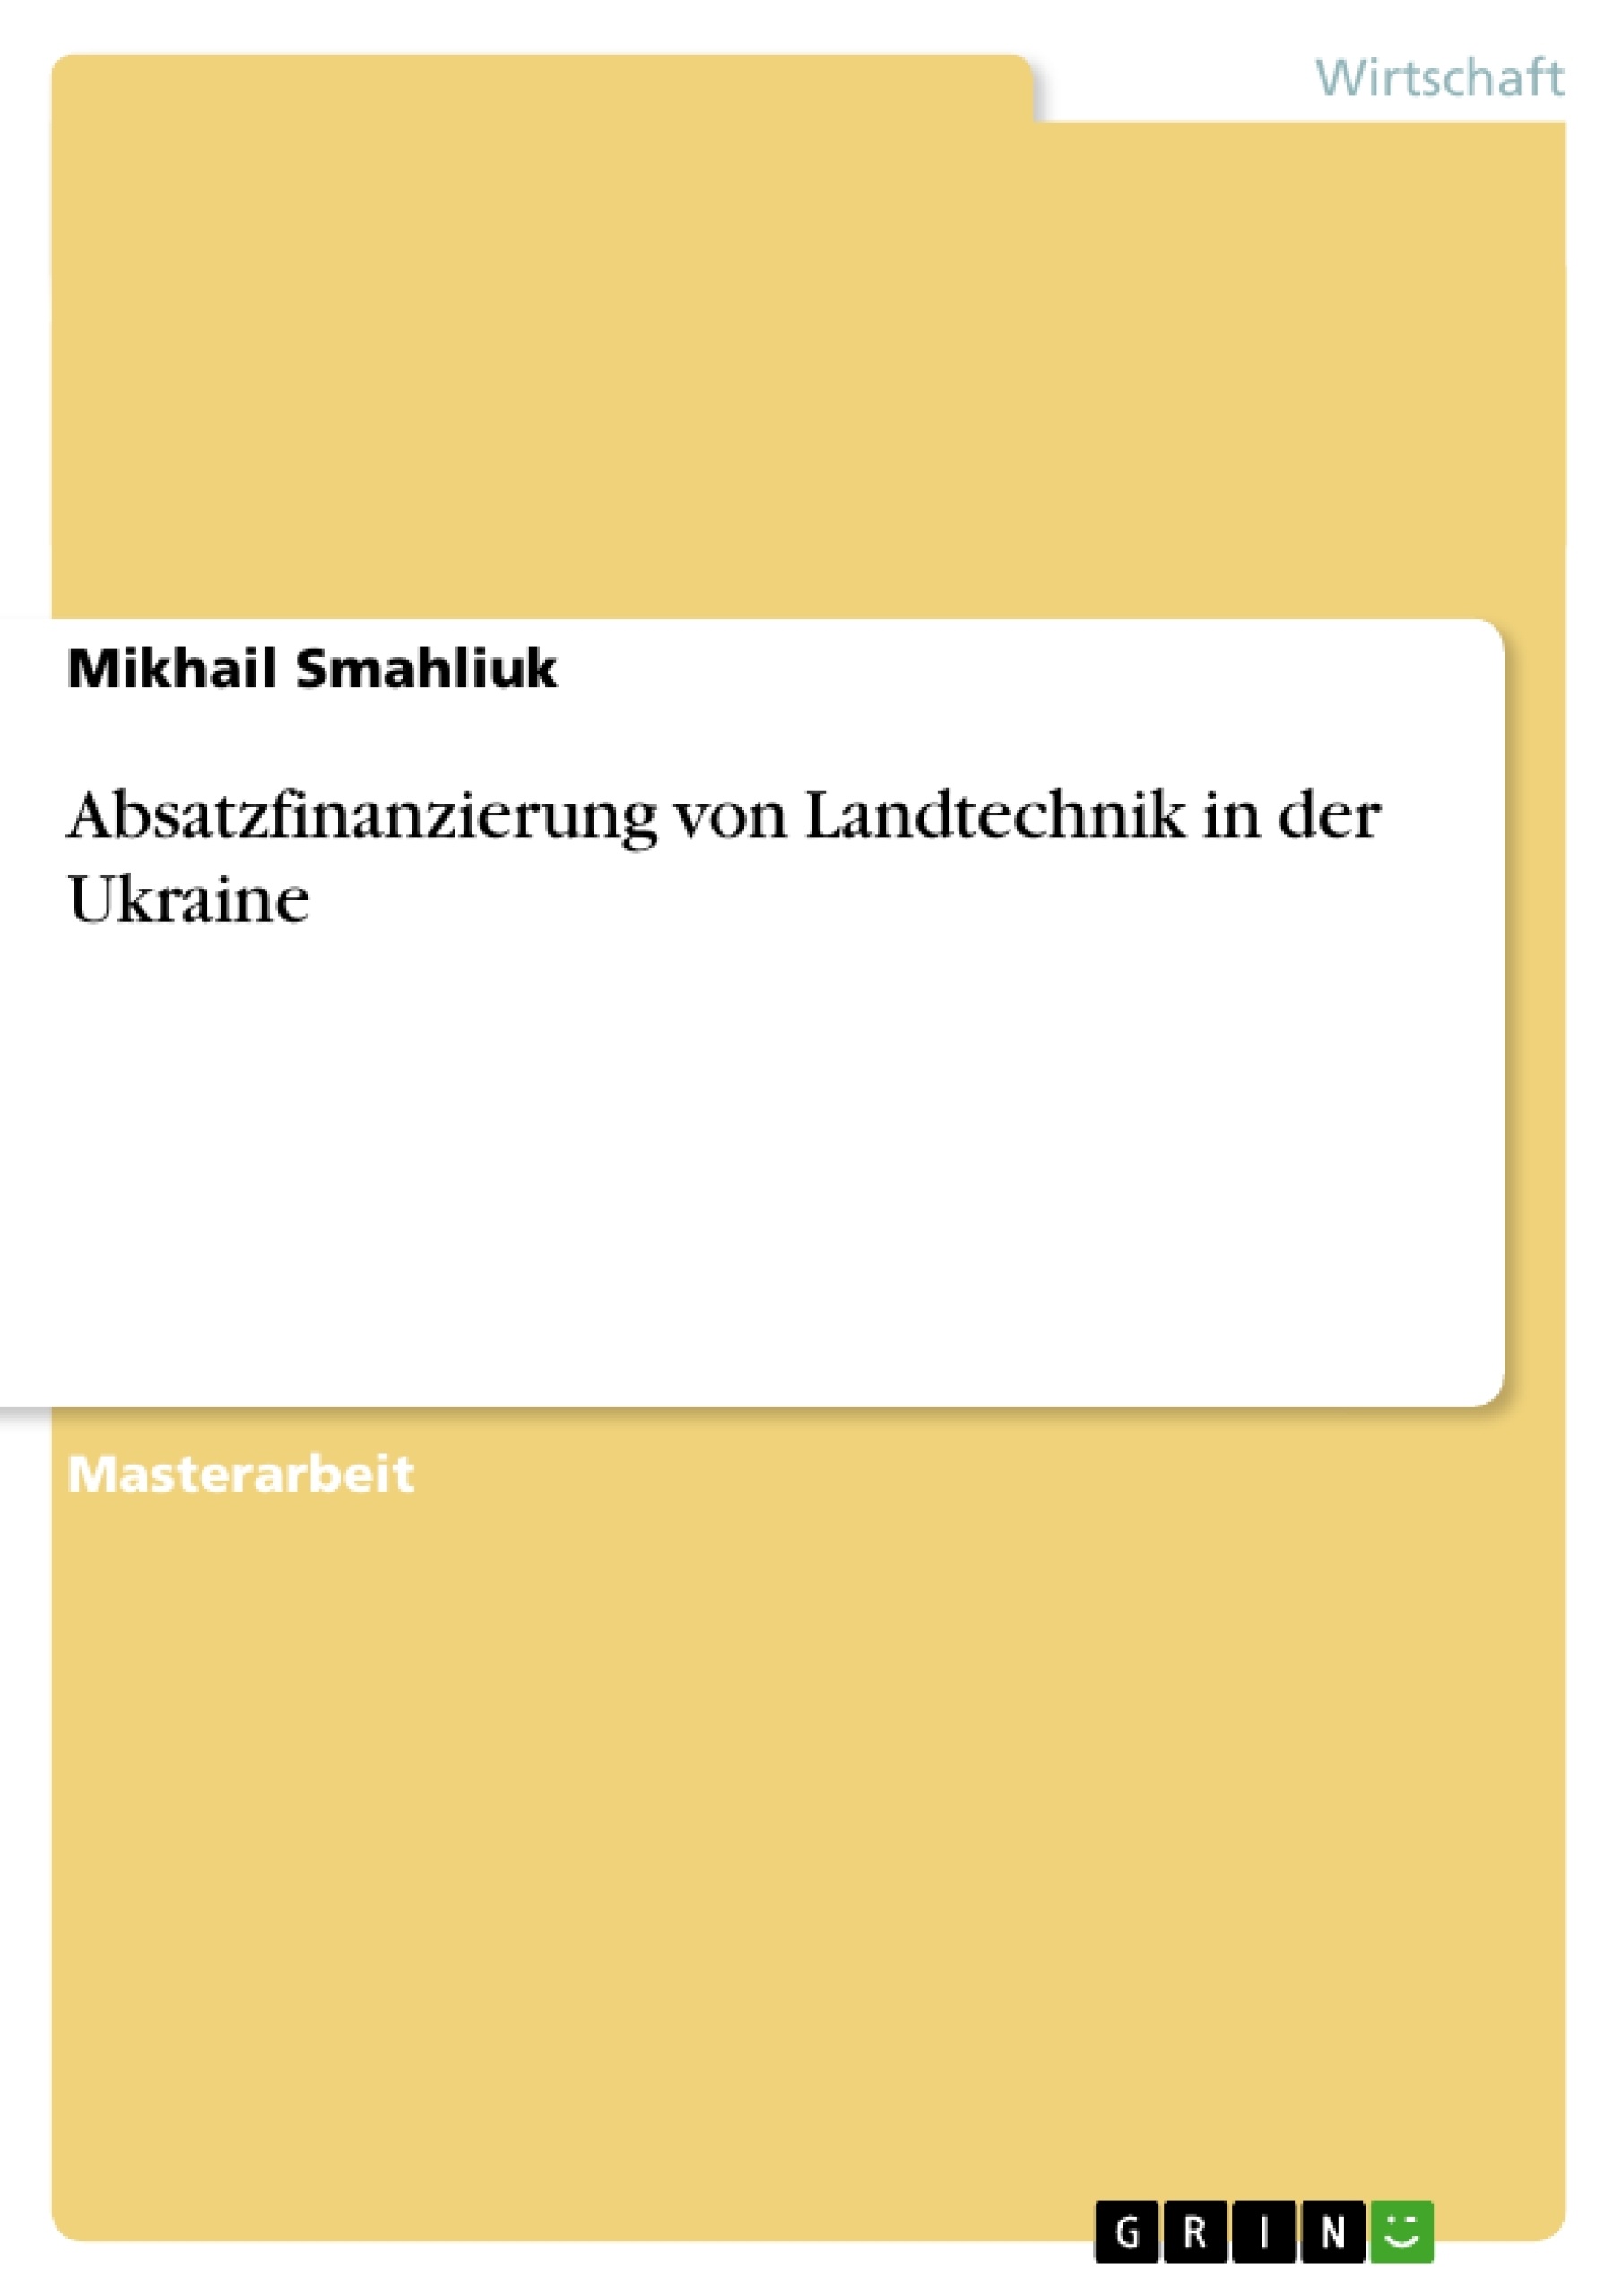 Título: Absatzfinanzierung von Landtechnik in der Ukraine